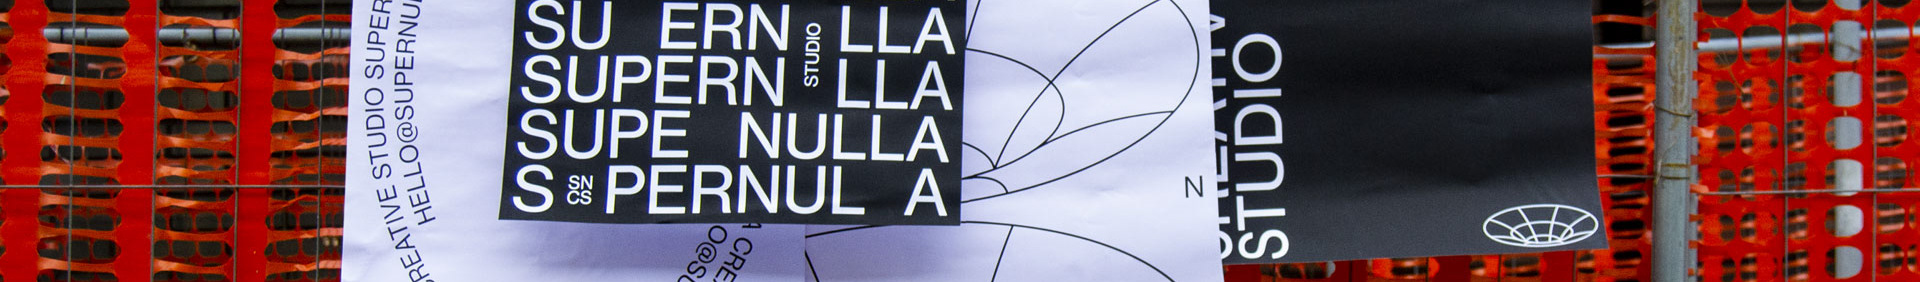 Supernulla Creative Studio's profile banner